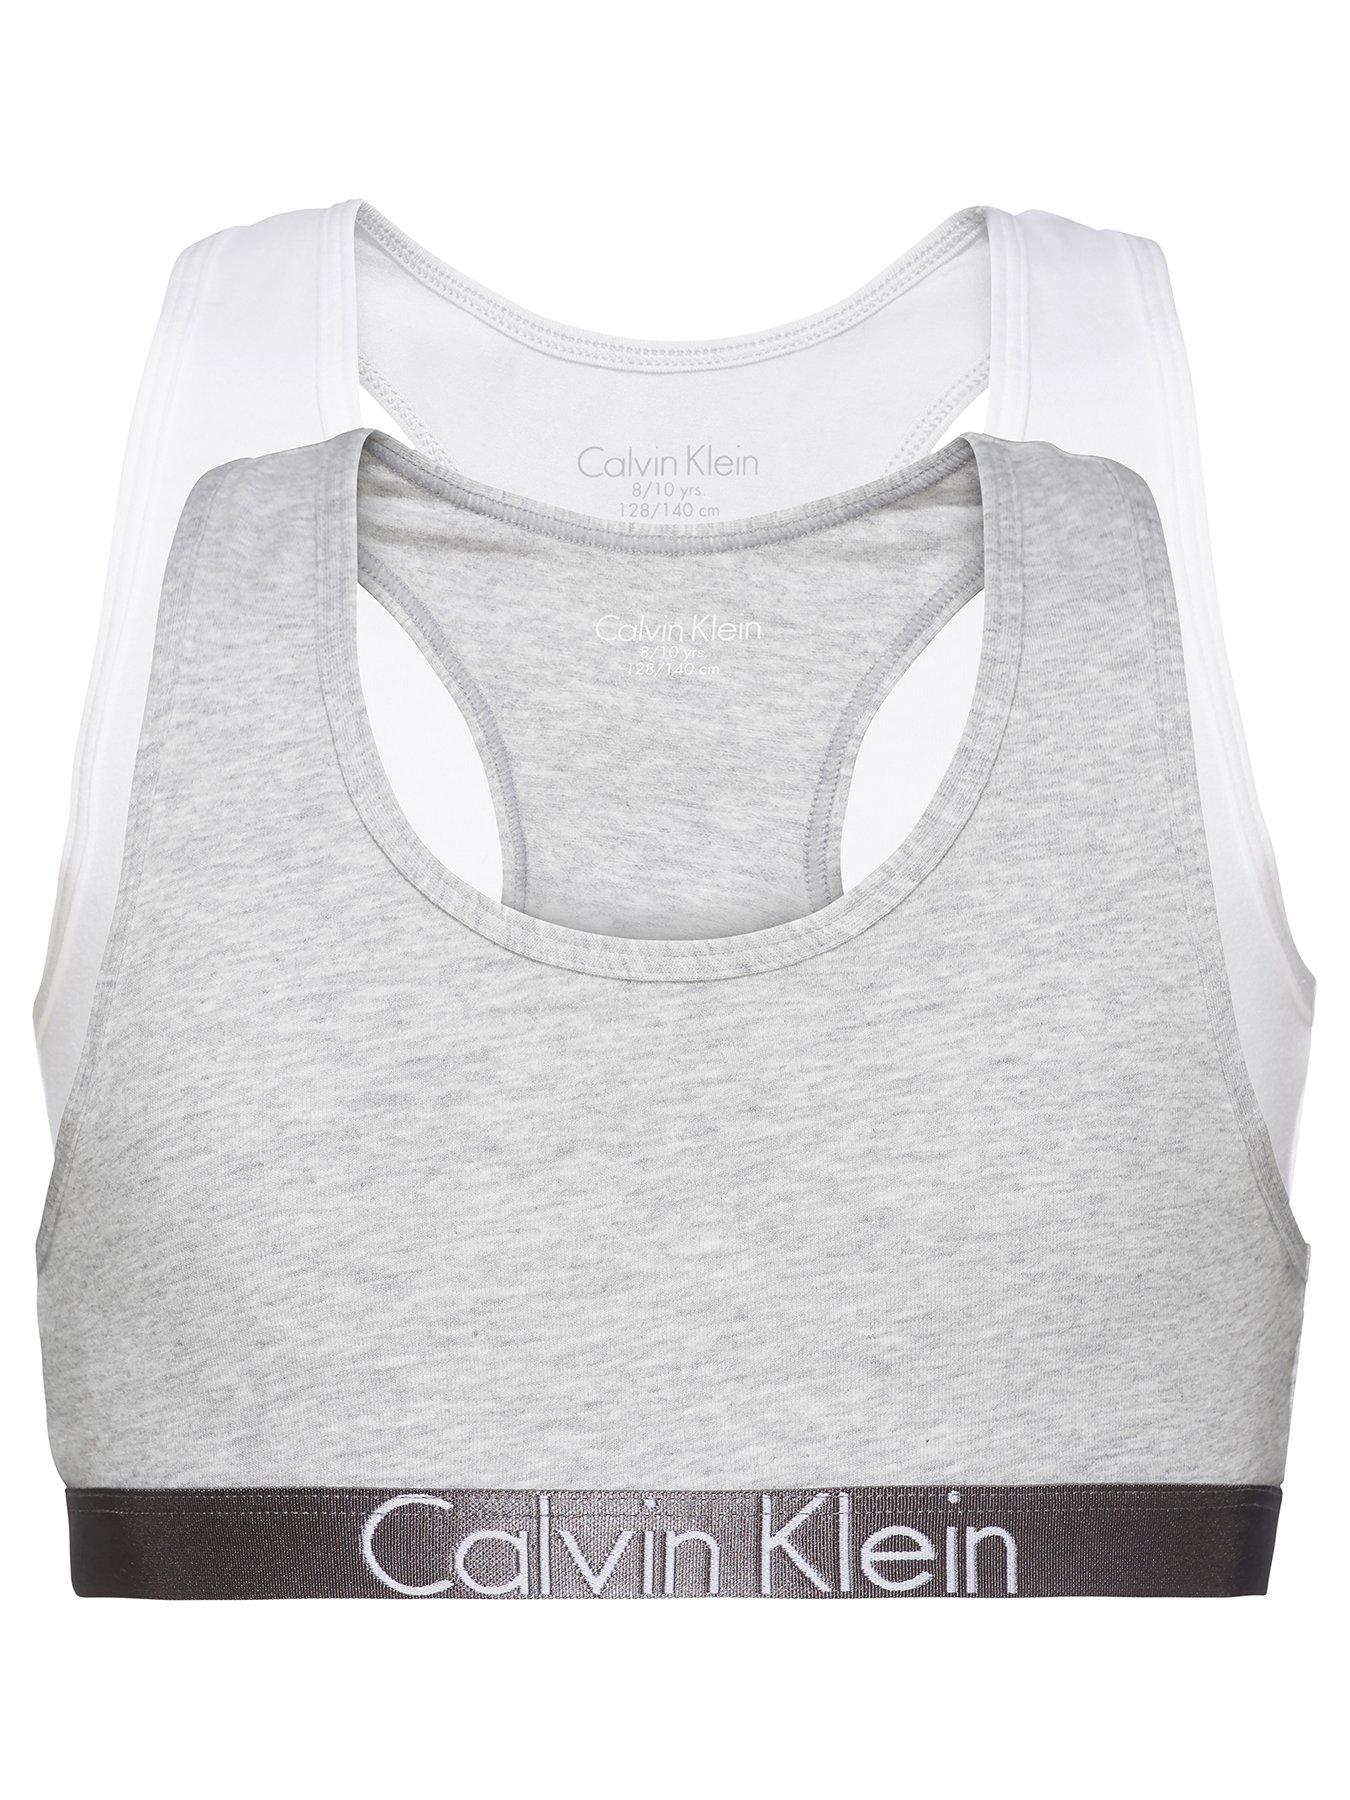 Calvin Klein - Girls Clothes - Girls' Underwear - Crop Top Bra - Calvin  Klein Girl's Bralette - Pack of 2 - Grey/Black - Age 14-16